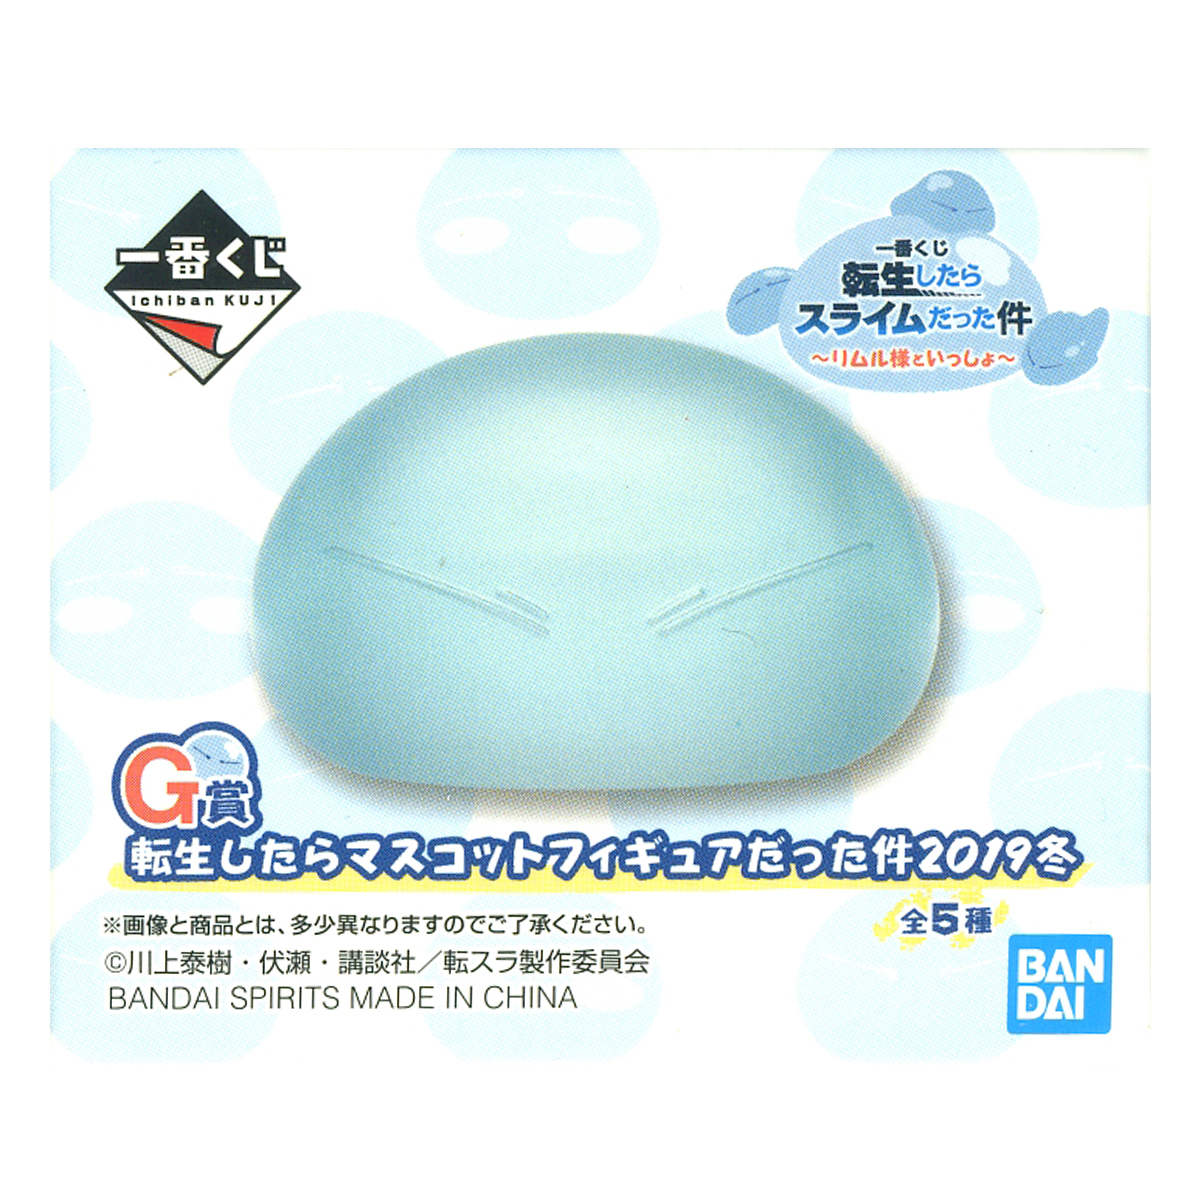 That Time I Got Reincarnated as a Slime Ichiban Kuji G Prize Bandai Spirits Random Blind Box Figure